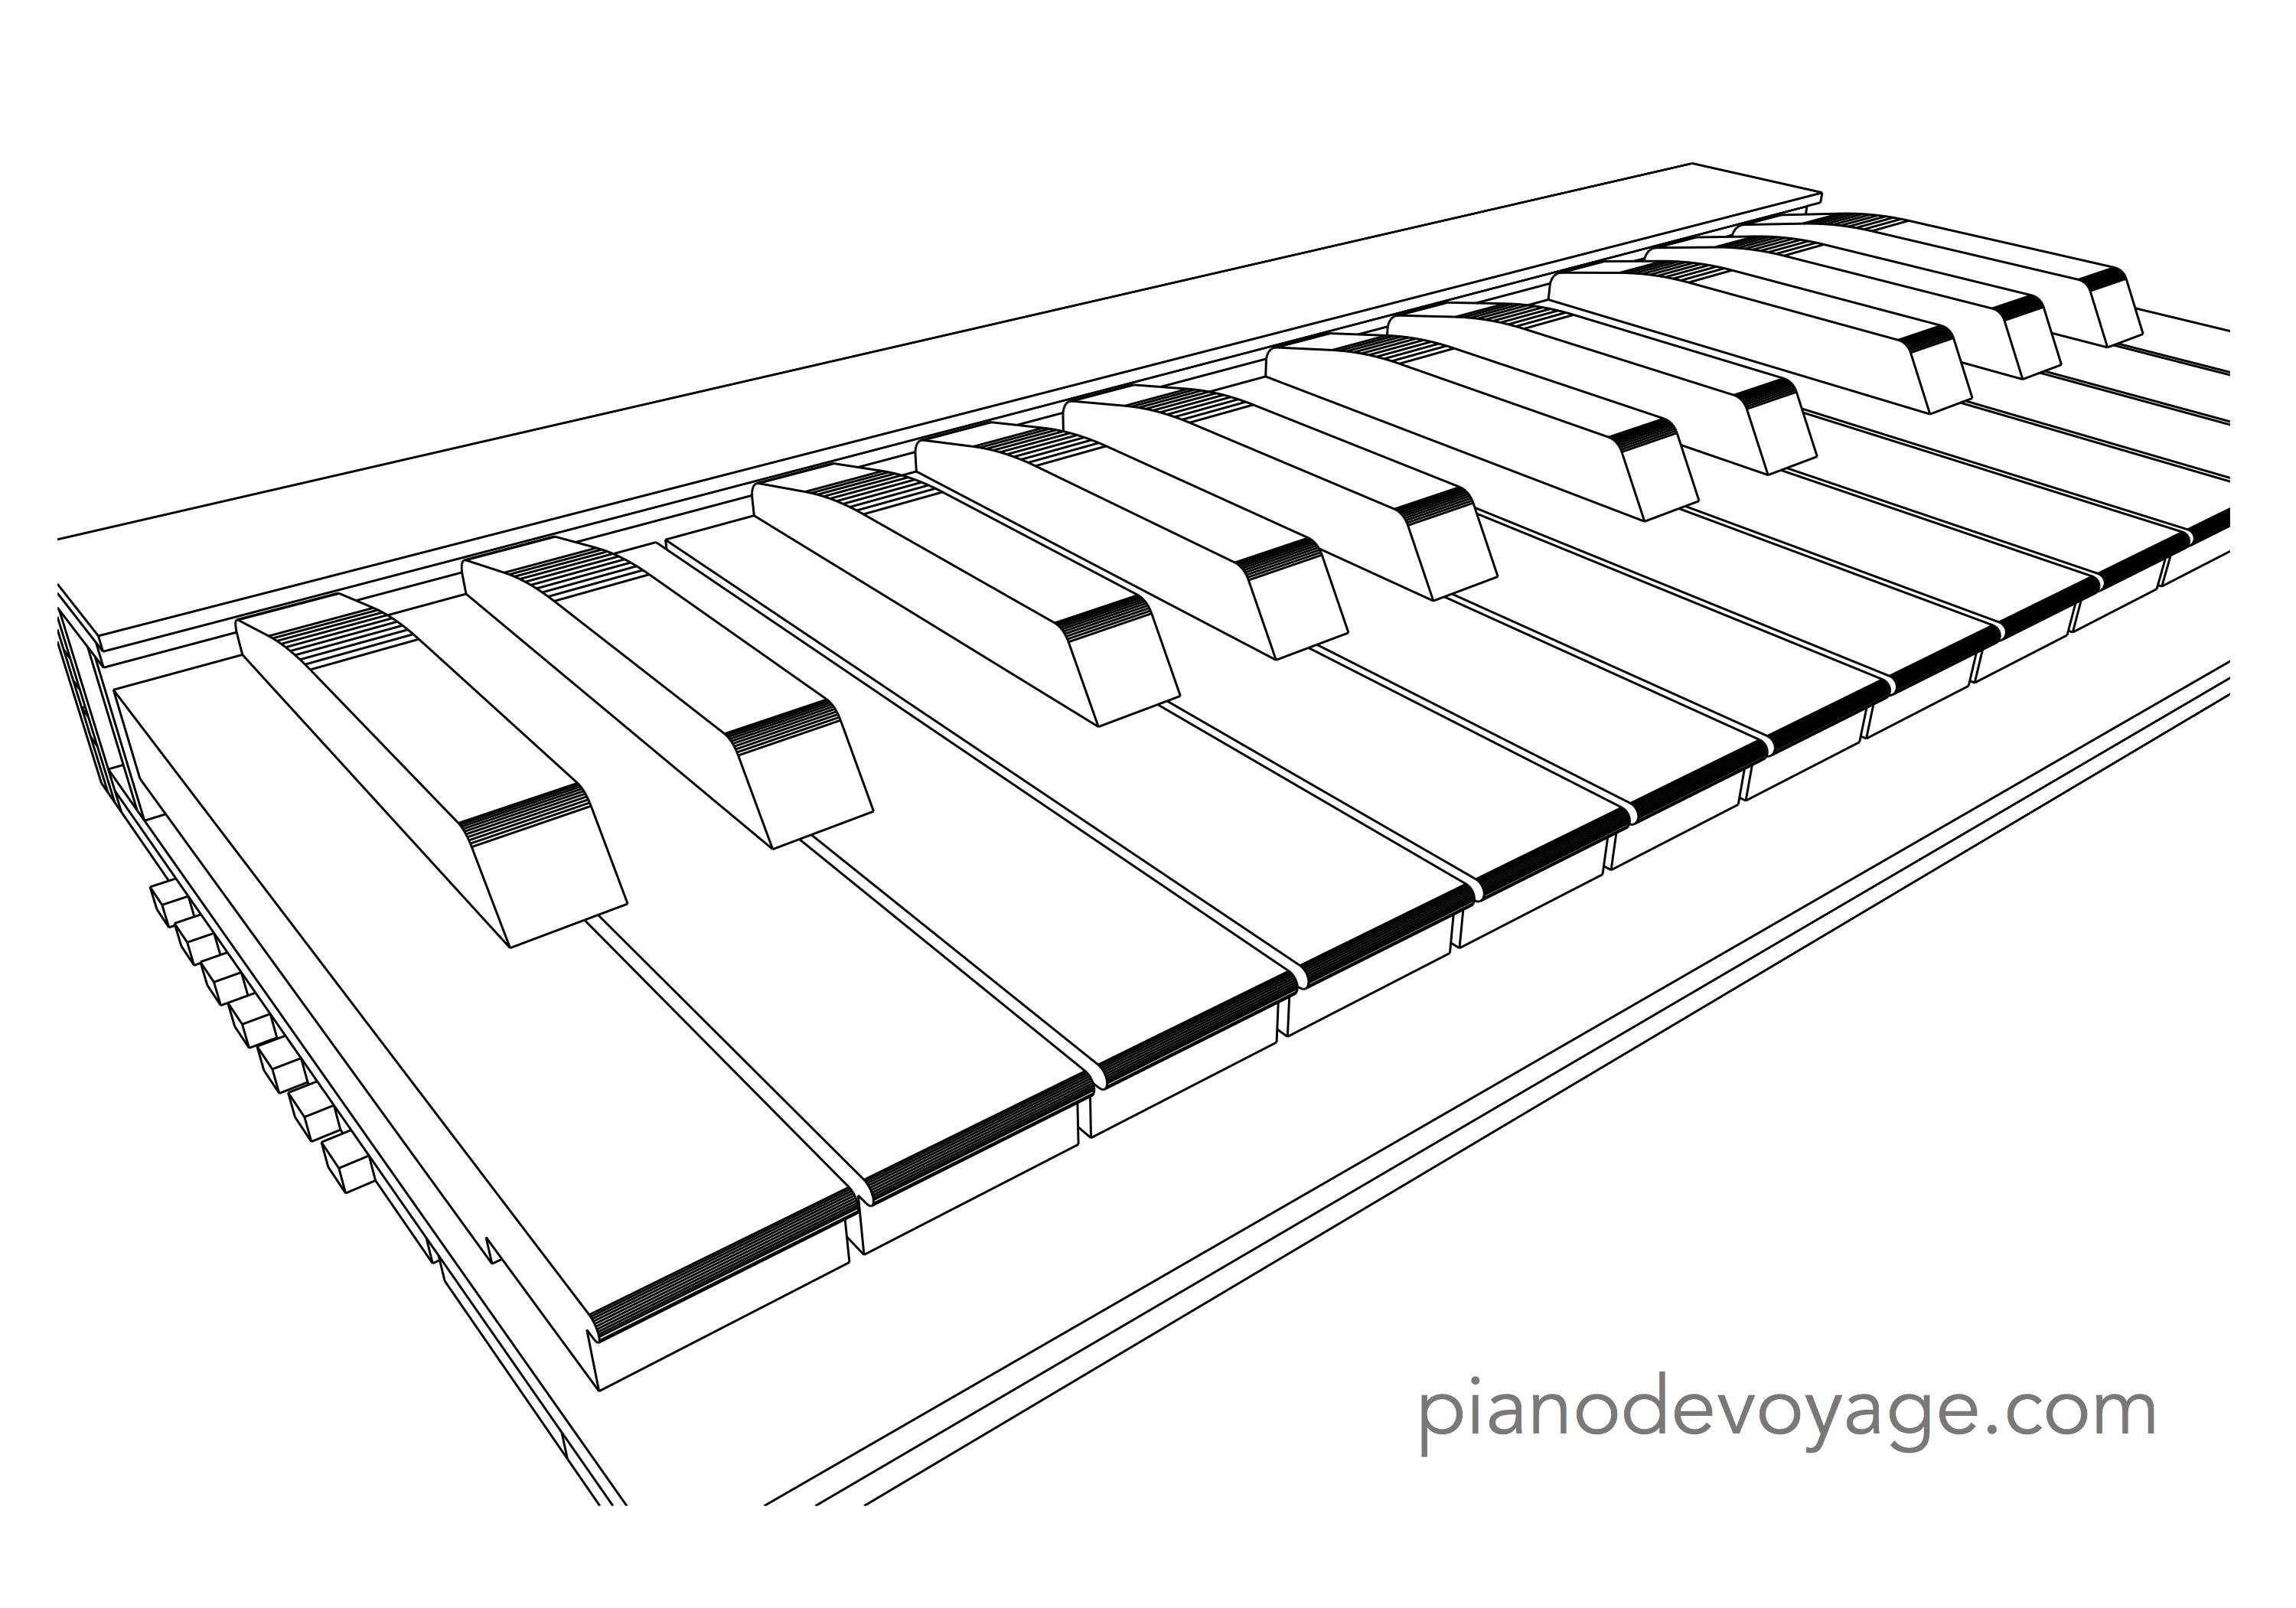 Piano de Voyage, a 3D-Printed portable piano keyboard